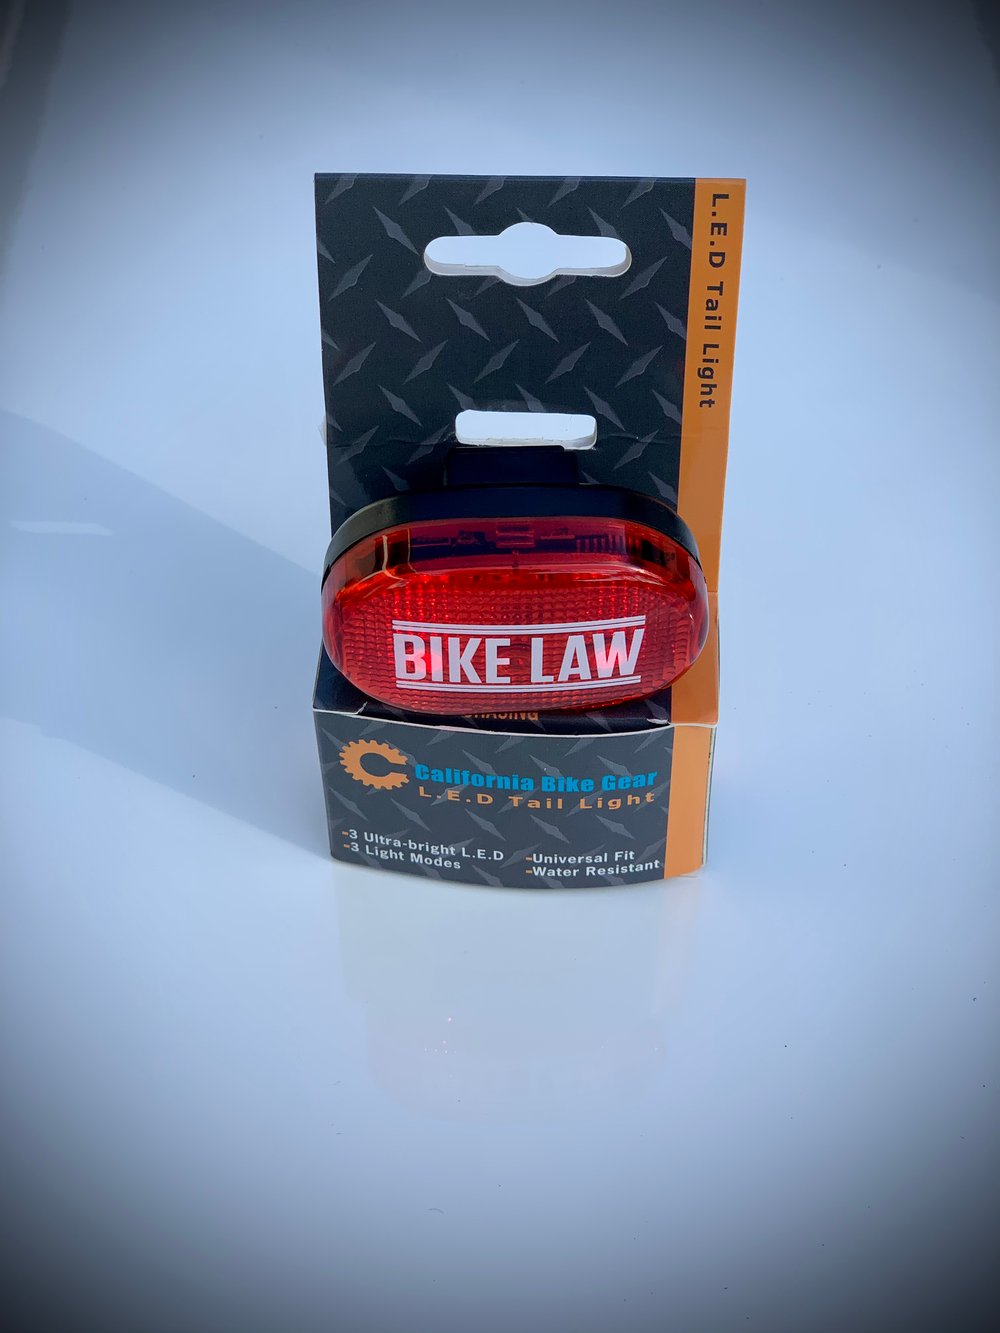 自行车法自行车灯的万博体育manbettx图像